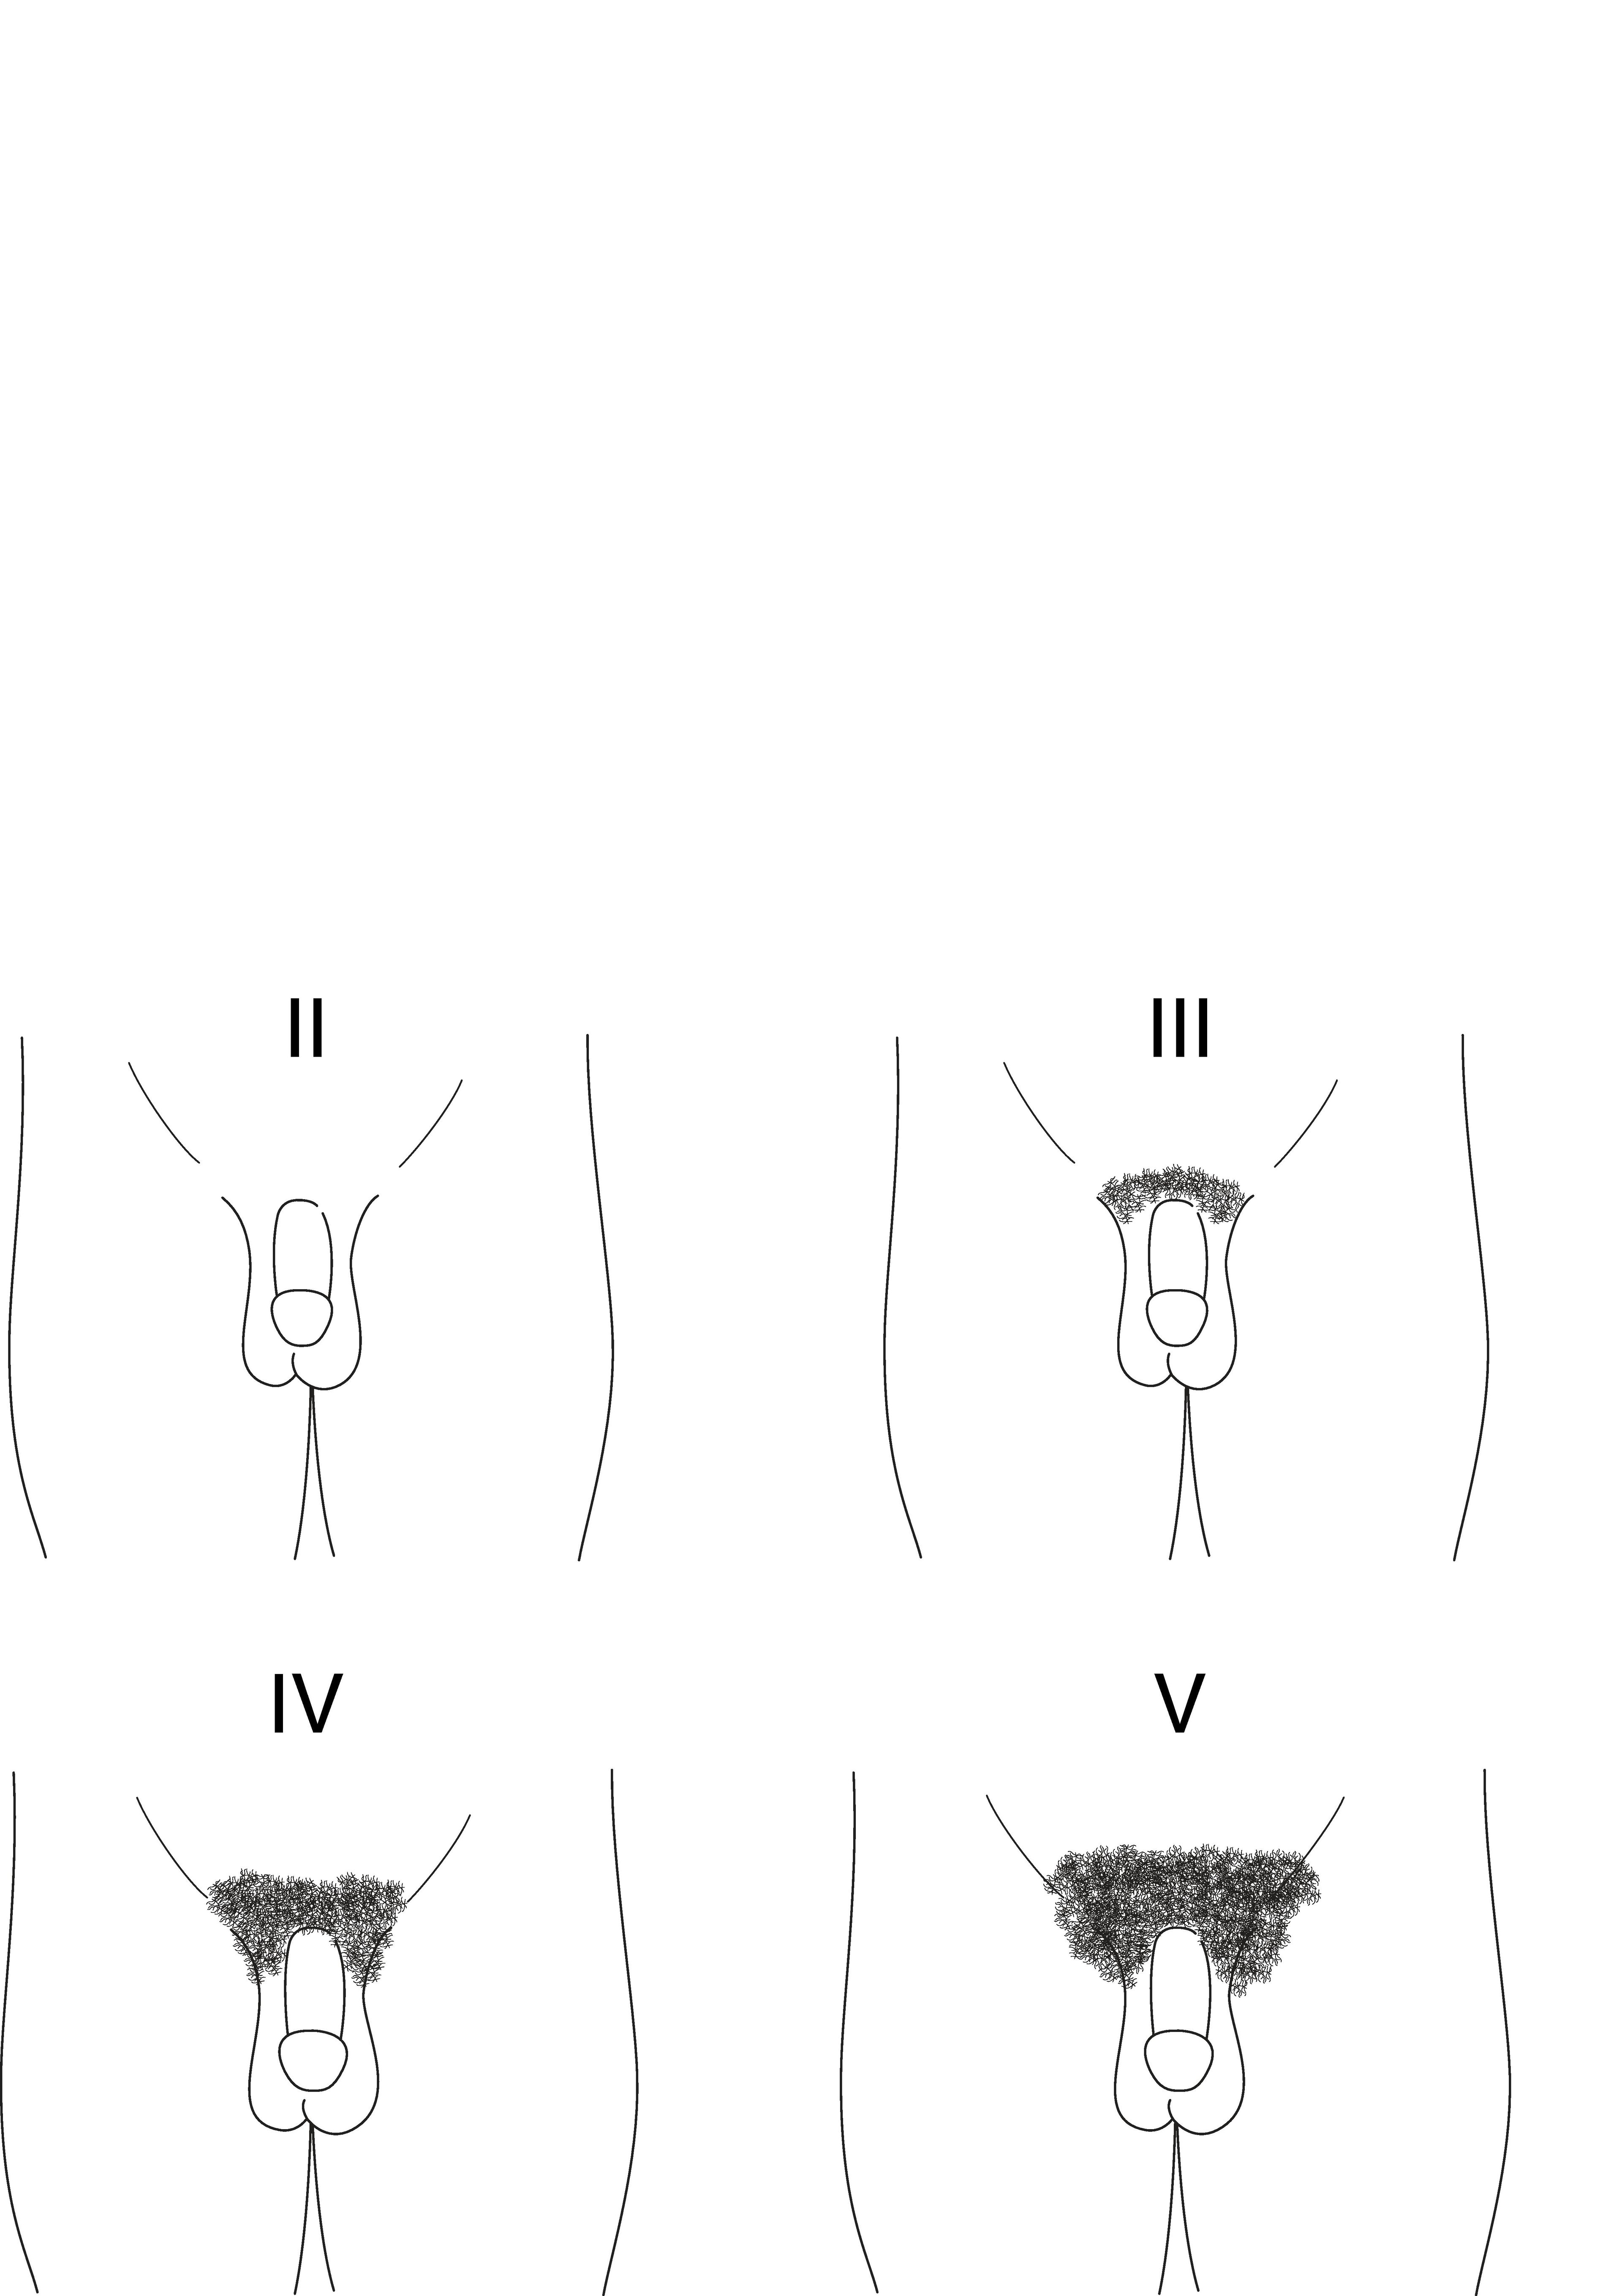 Diagrama dos estágios II a V de Tanner do desenvolvimento de pelo pubiano em meninos